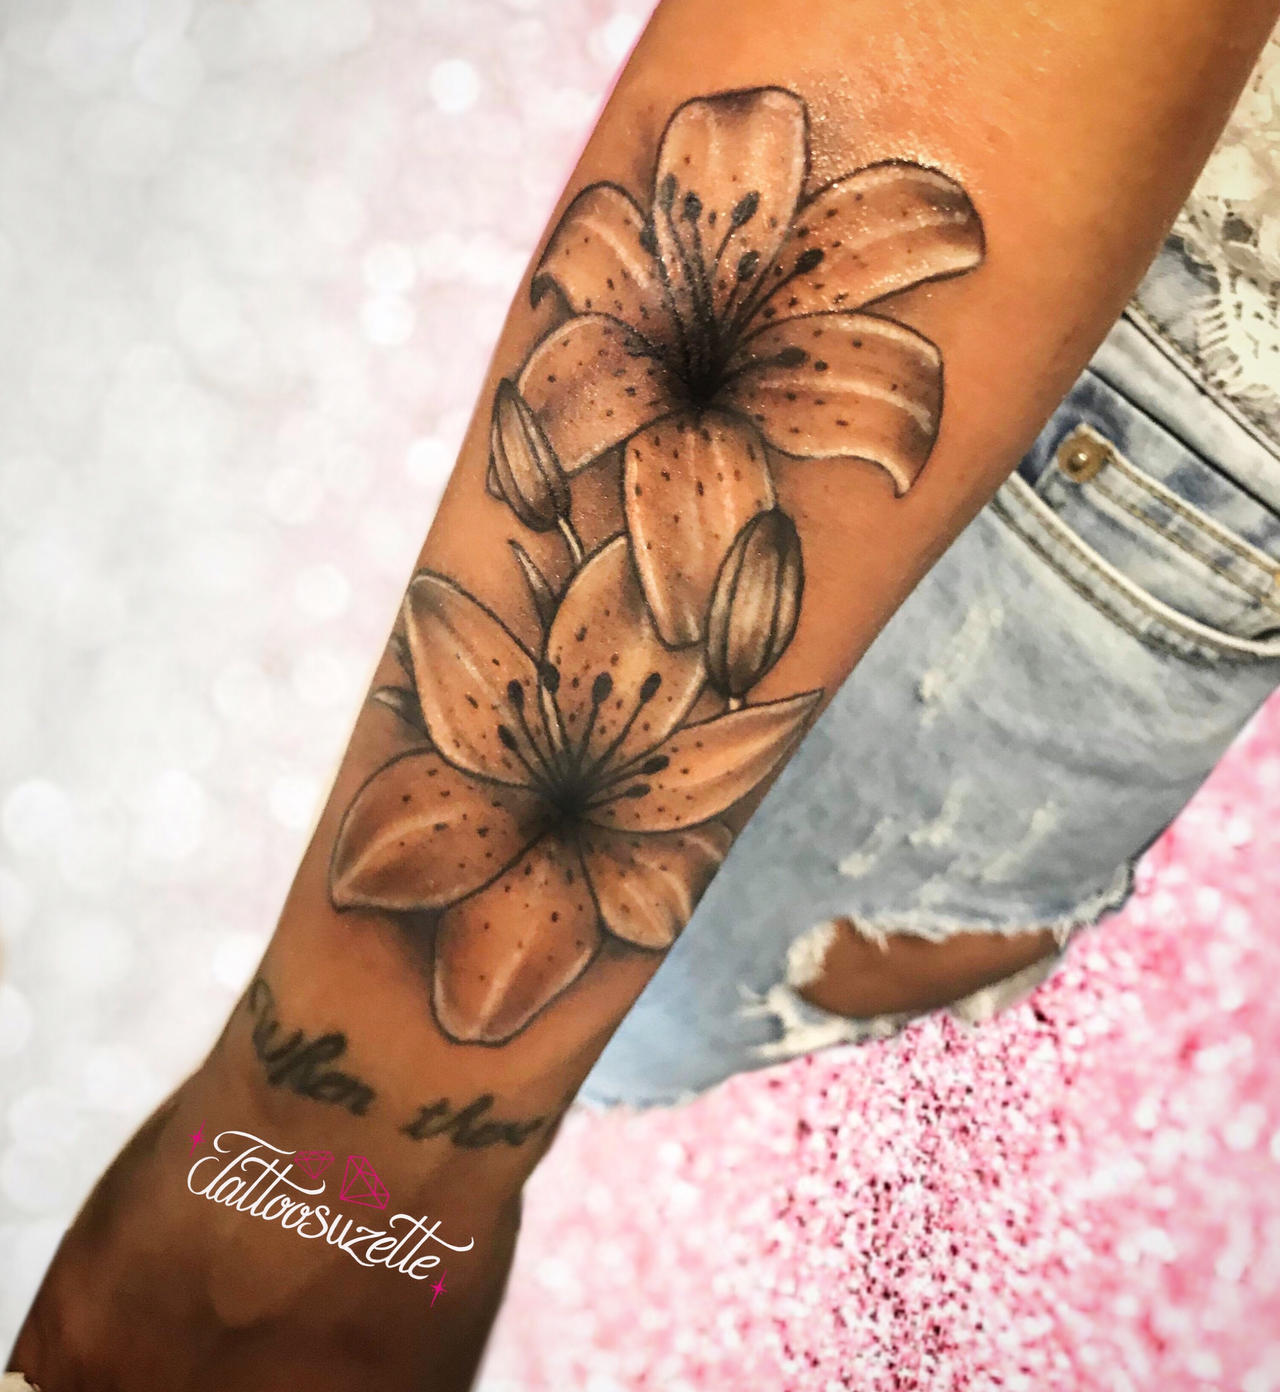 Flower tattoo arm by tattoosuzette on DeviantArt